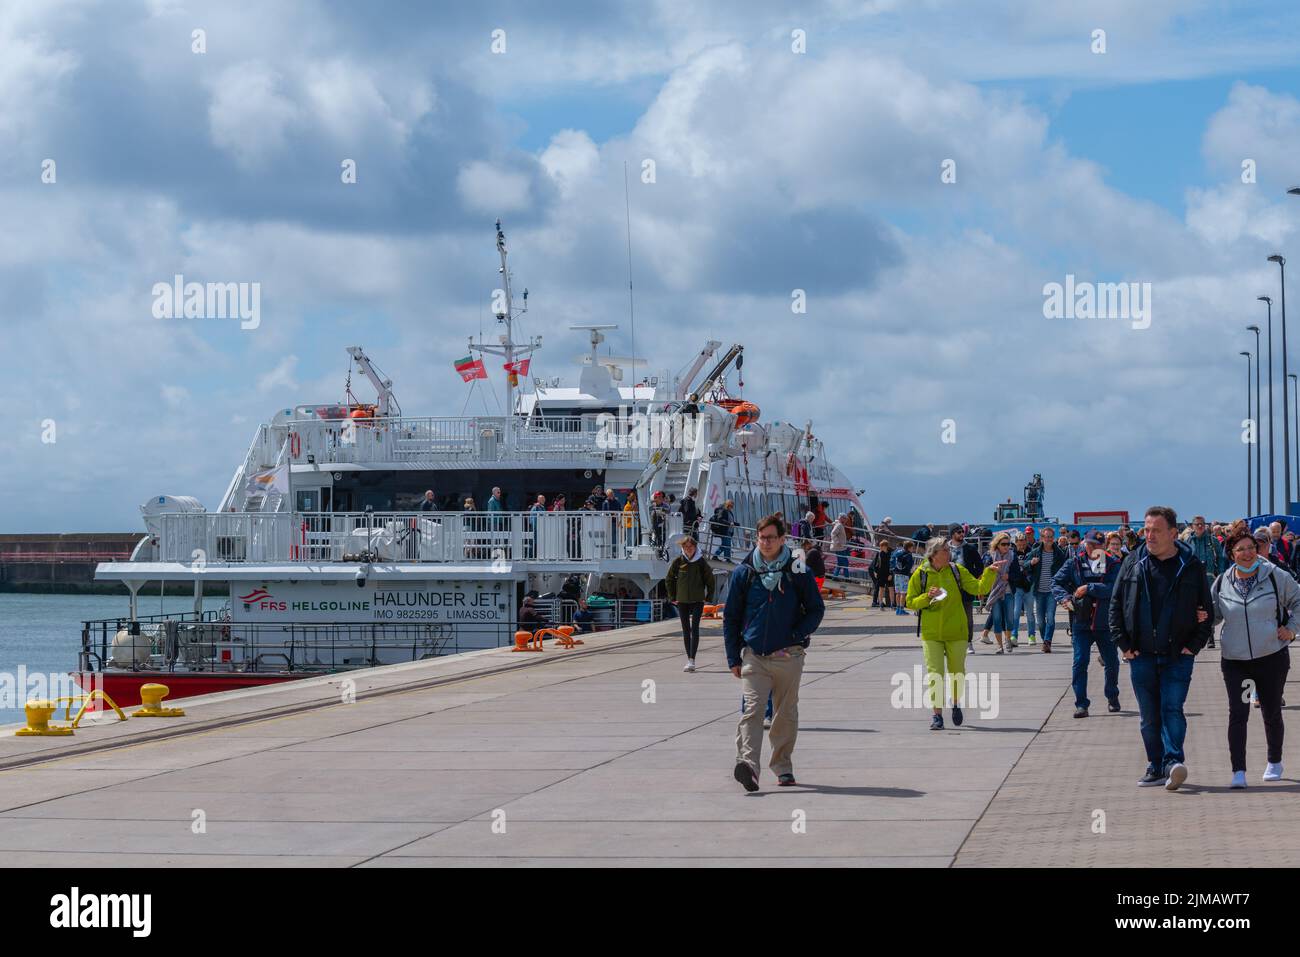 Pasajeros que llevan turistas a la isla de alta mar Heligoland, Mar del Norte, Schleswig-Holstein, Norte de Alemania, Europa Foto de stock